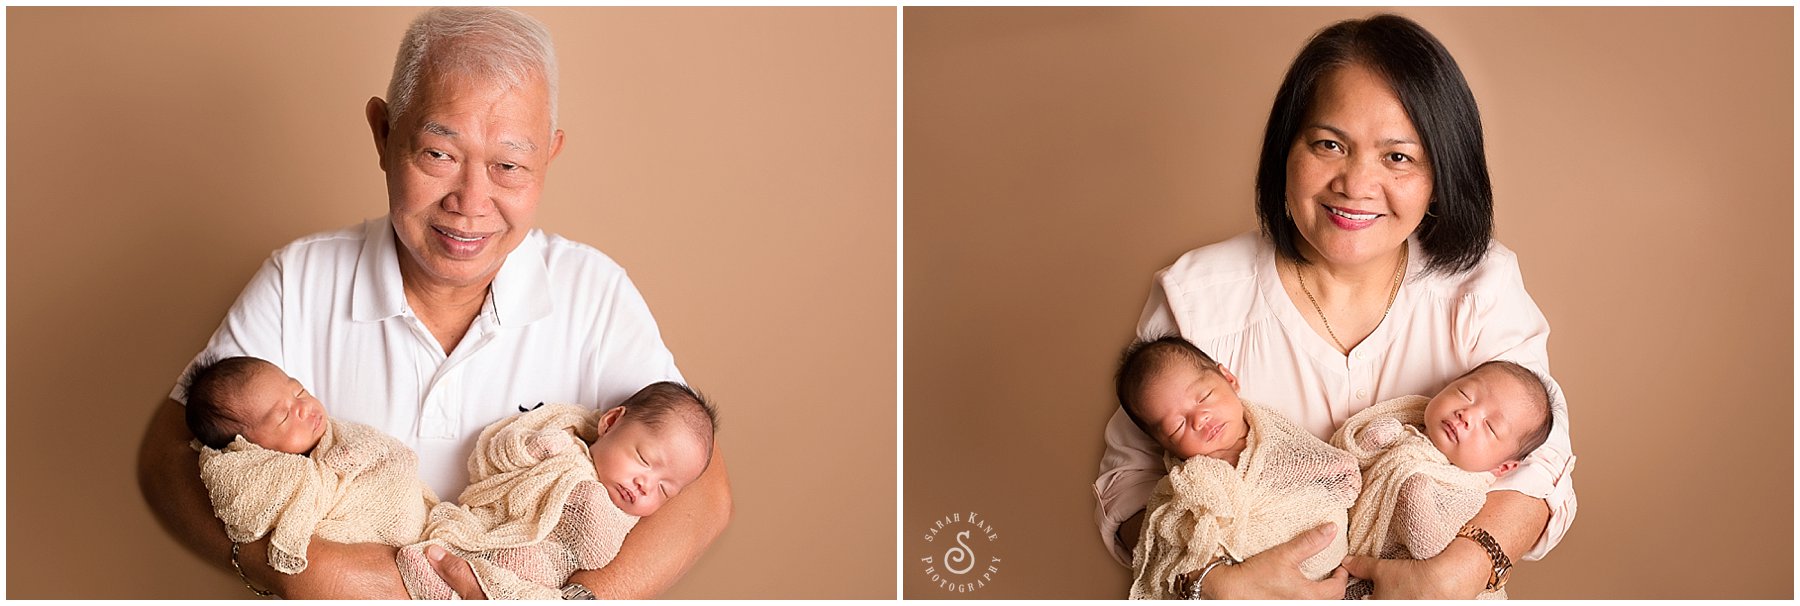 Newborn Twins Portraits 07.jpg